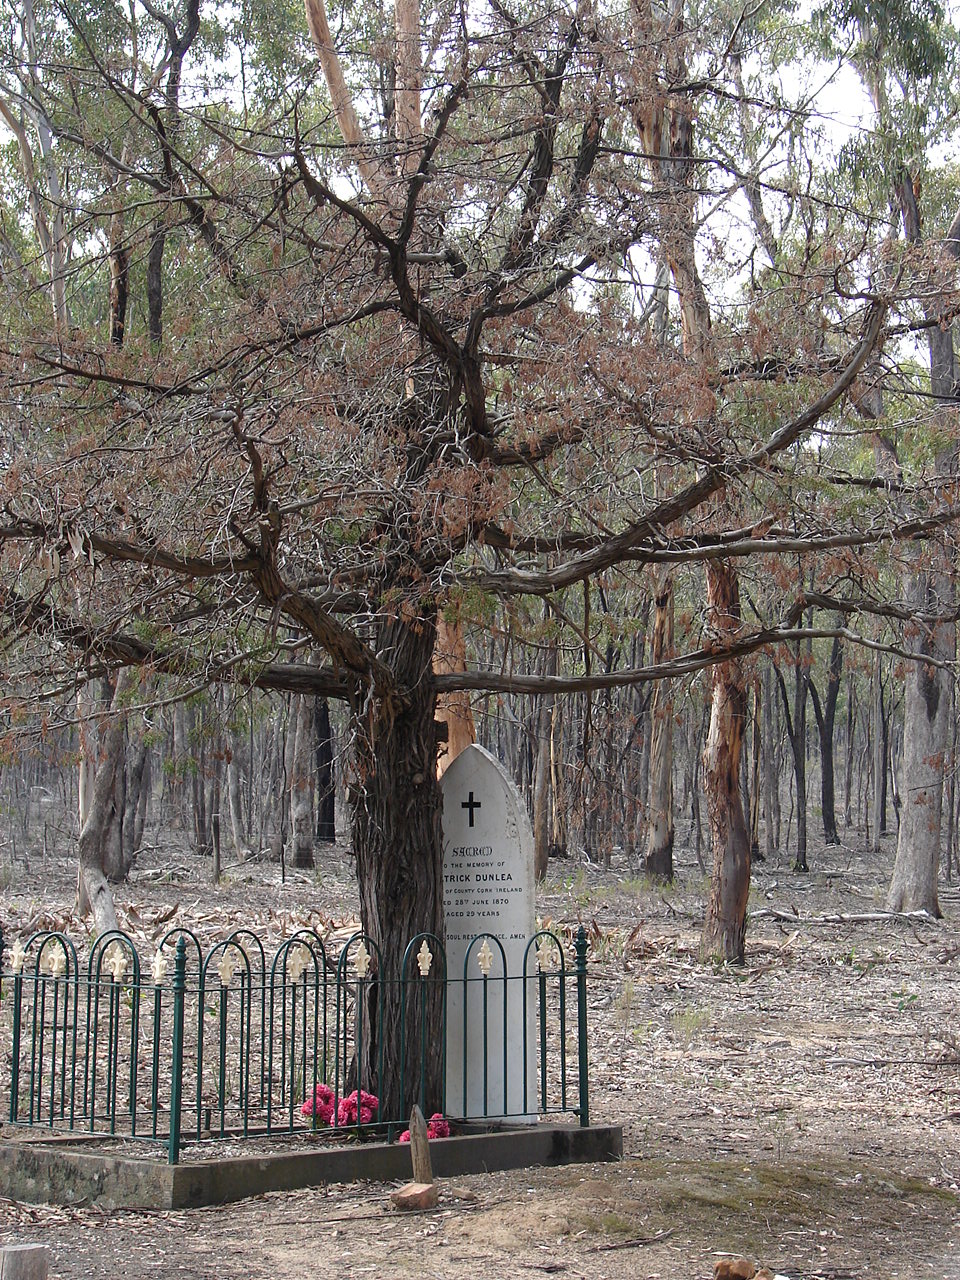 Graytown Cemetery Reserve | Graytown VIC 3608, Australia